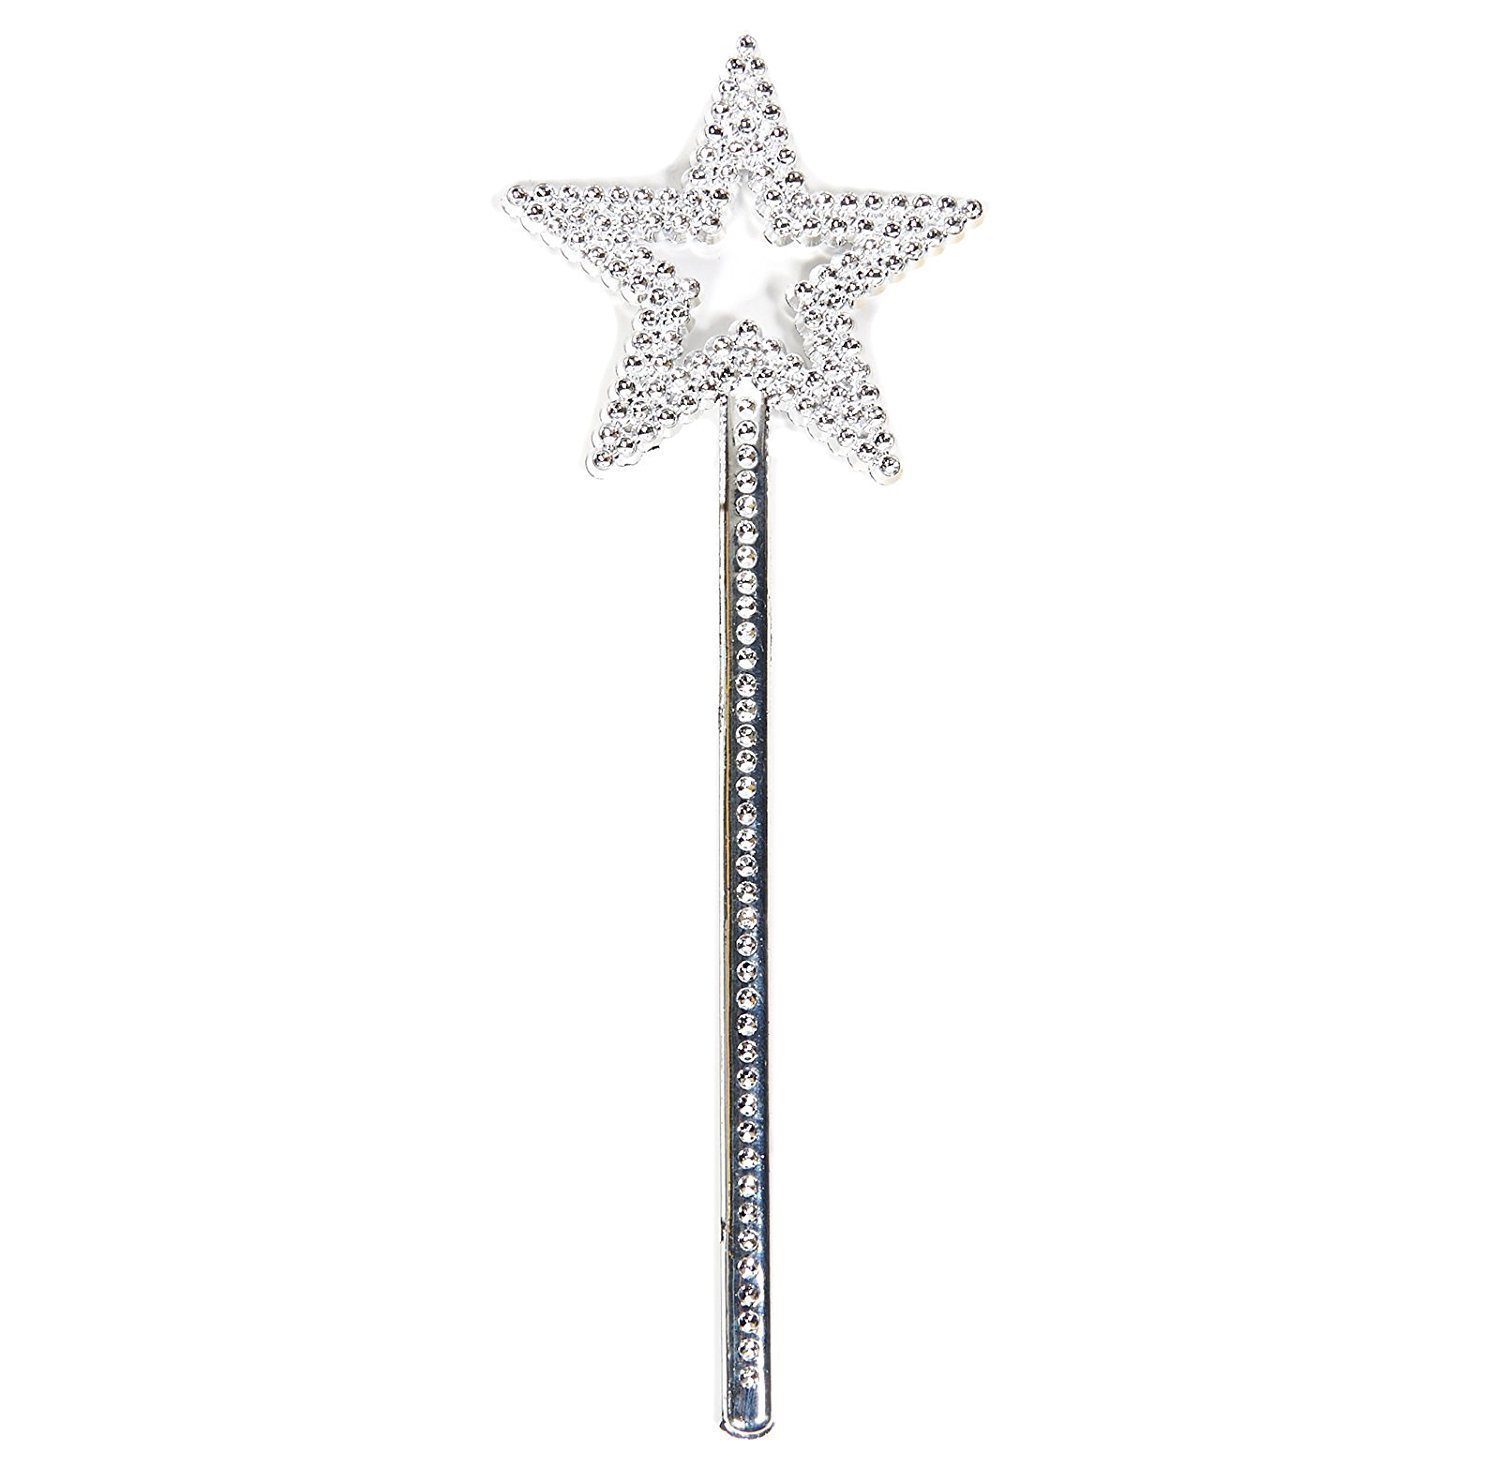 Yıldız Model Peri Asası Melek Asası Prenses Asası Metalize Gümüş Renk (CLZ)